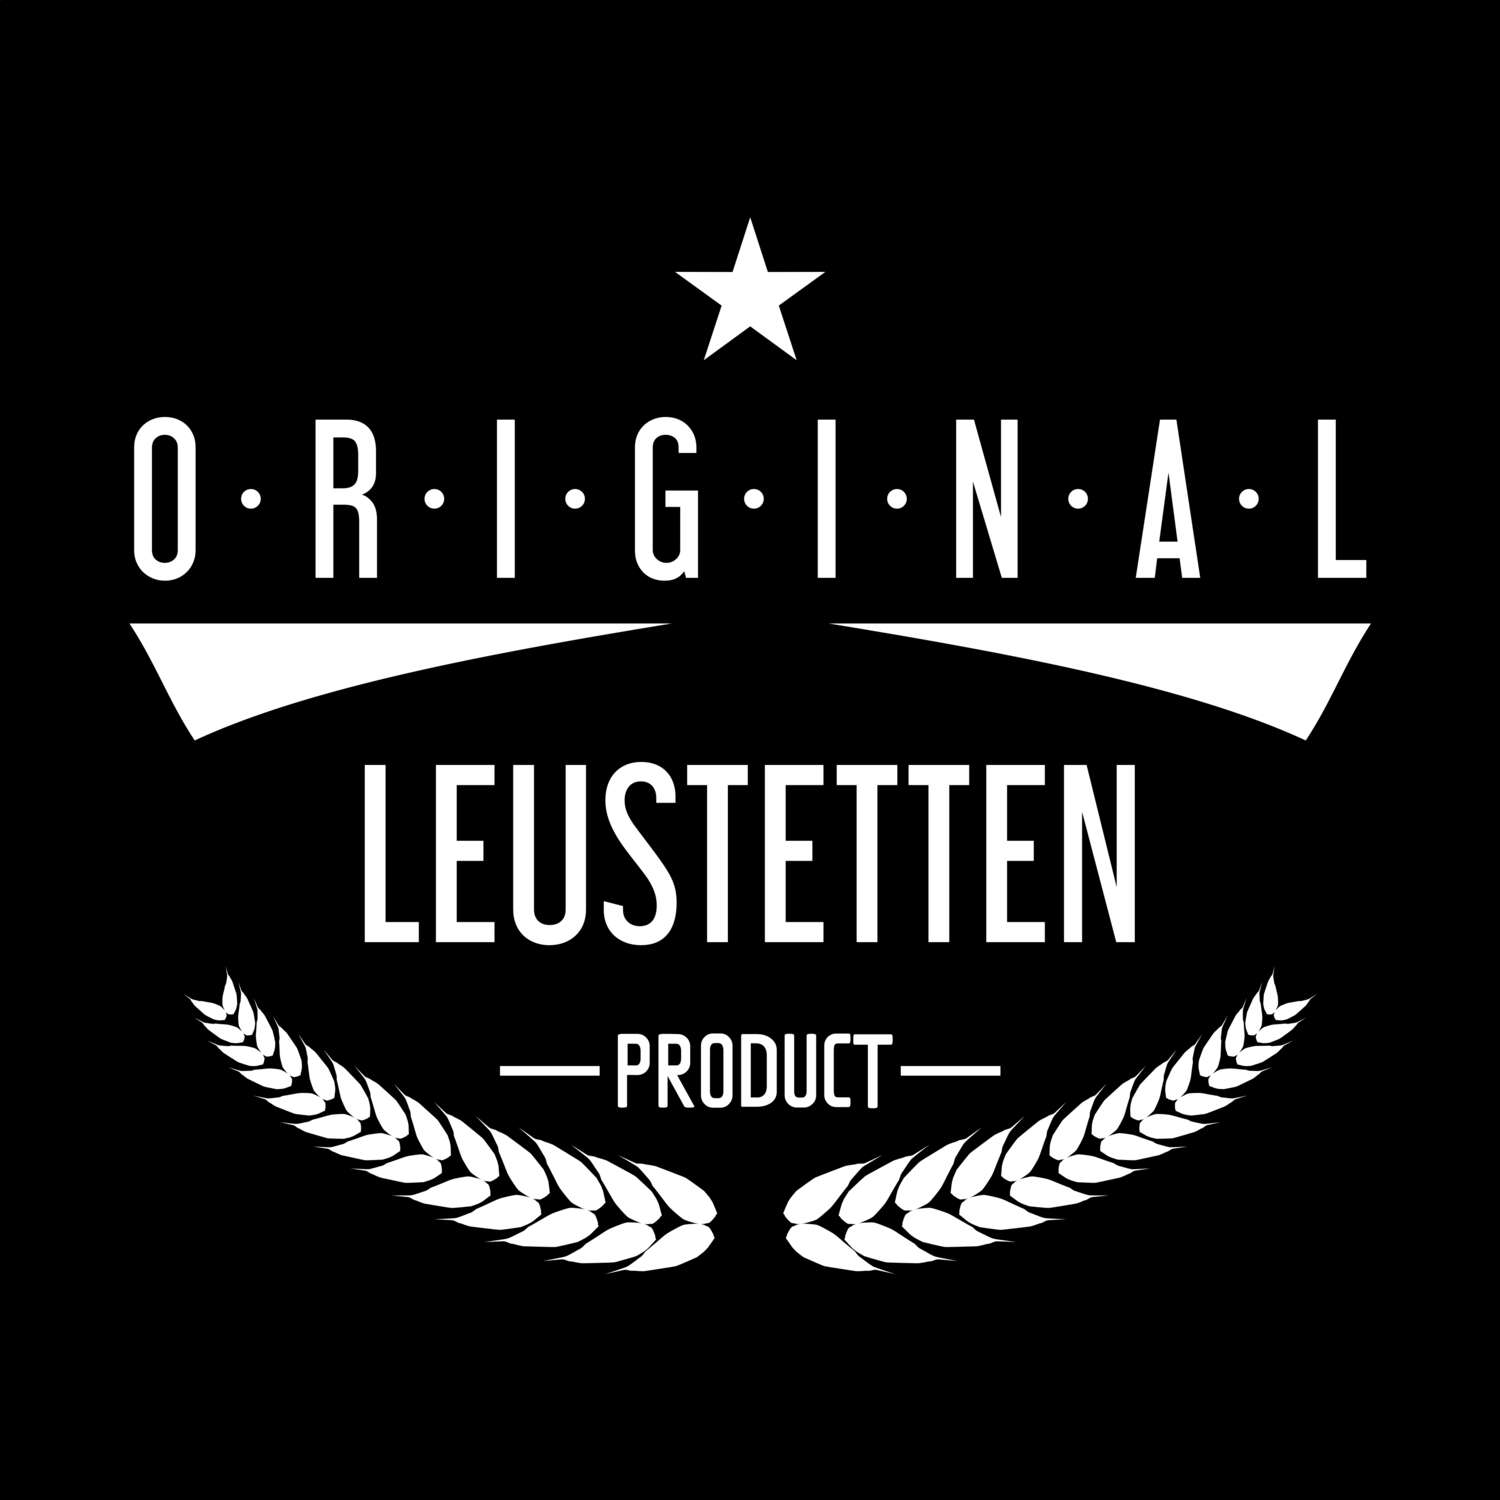 Leustetten T-Shirt »Original Product«